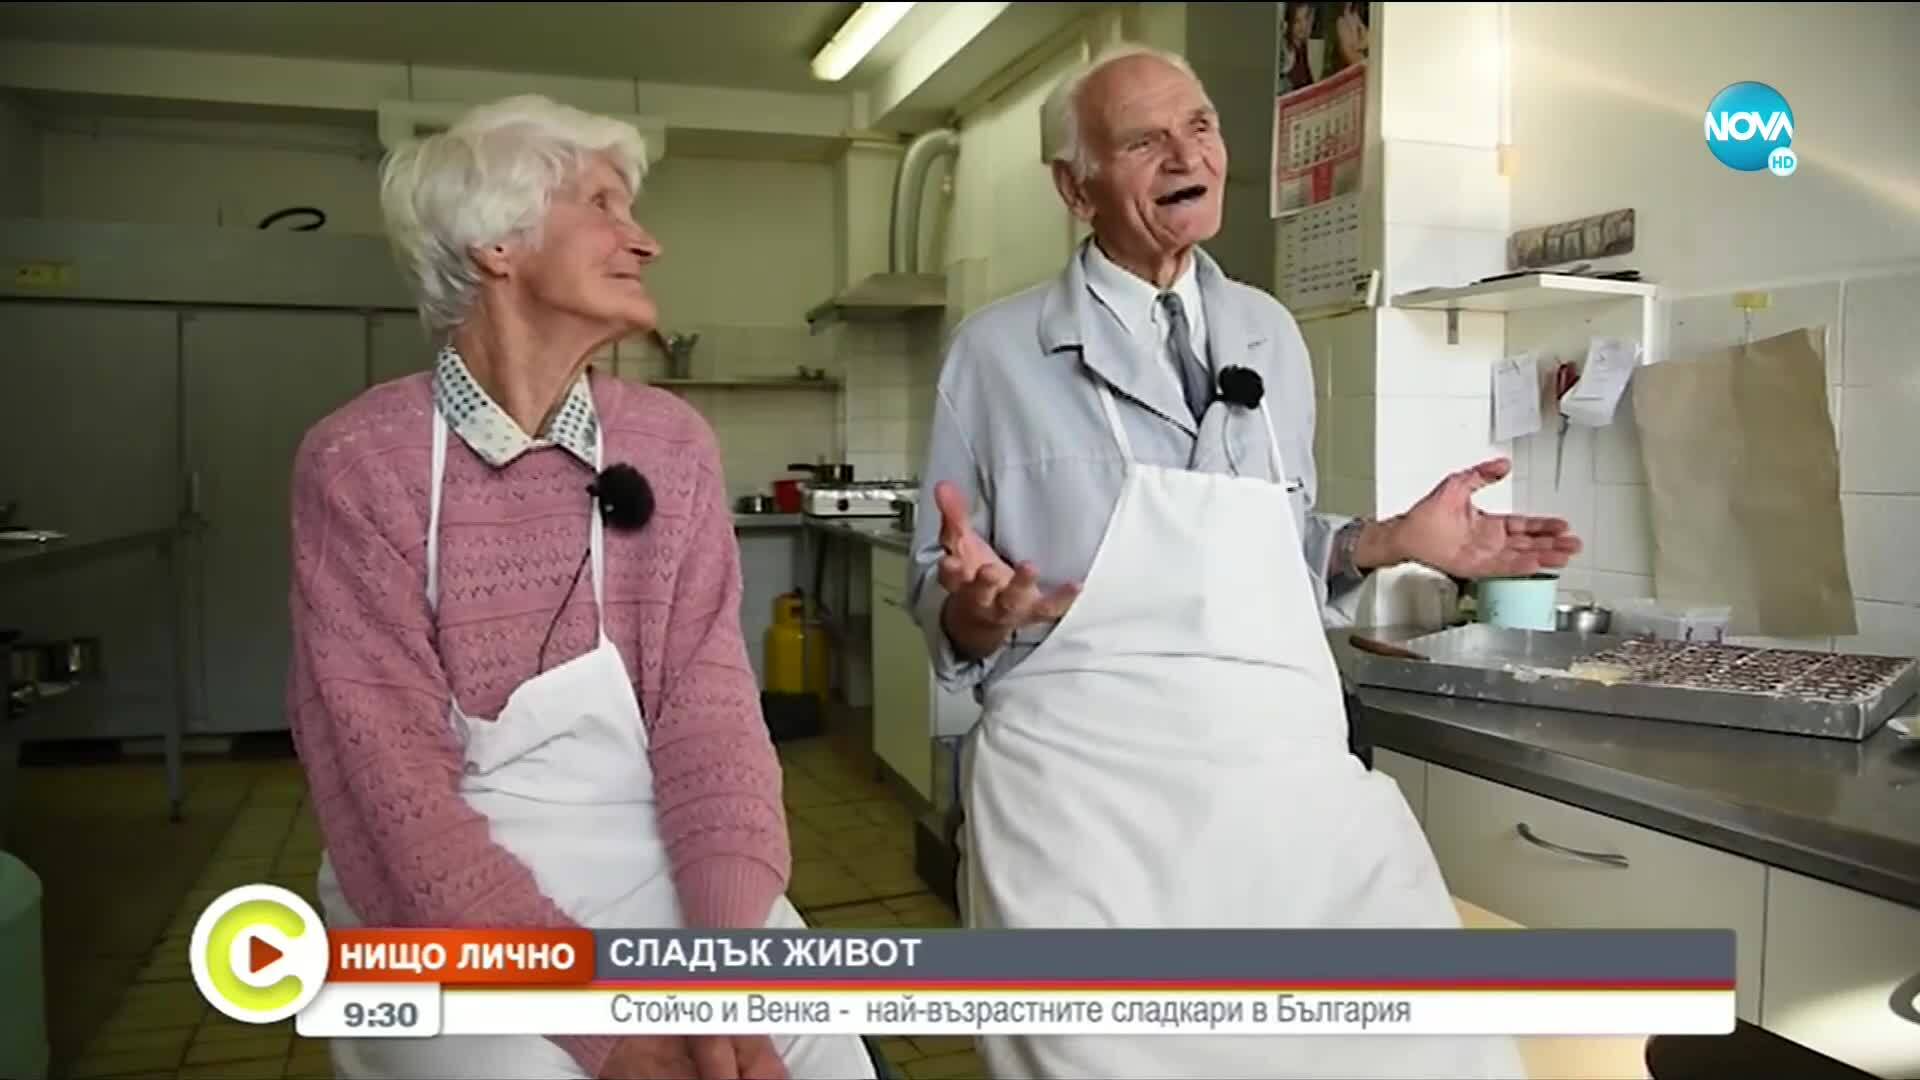 „НИЩО ЛИЧНО”: Кои са най-възрастните сладкари в България